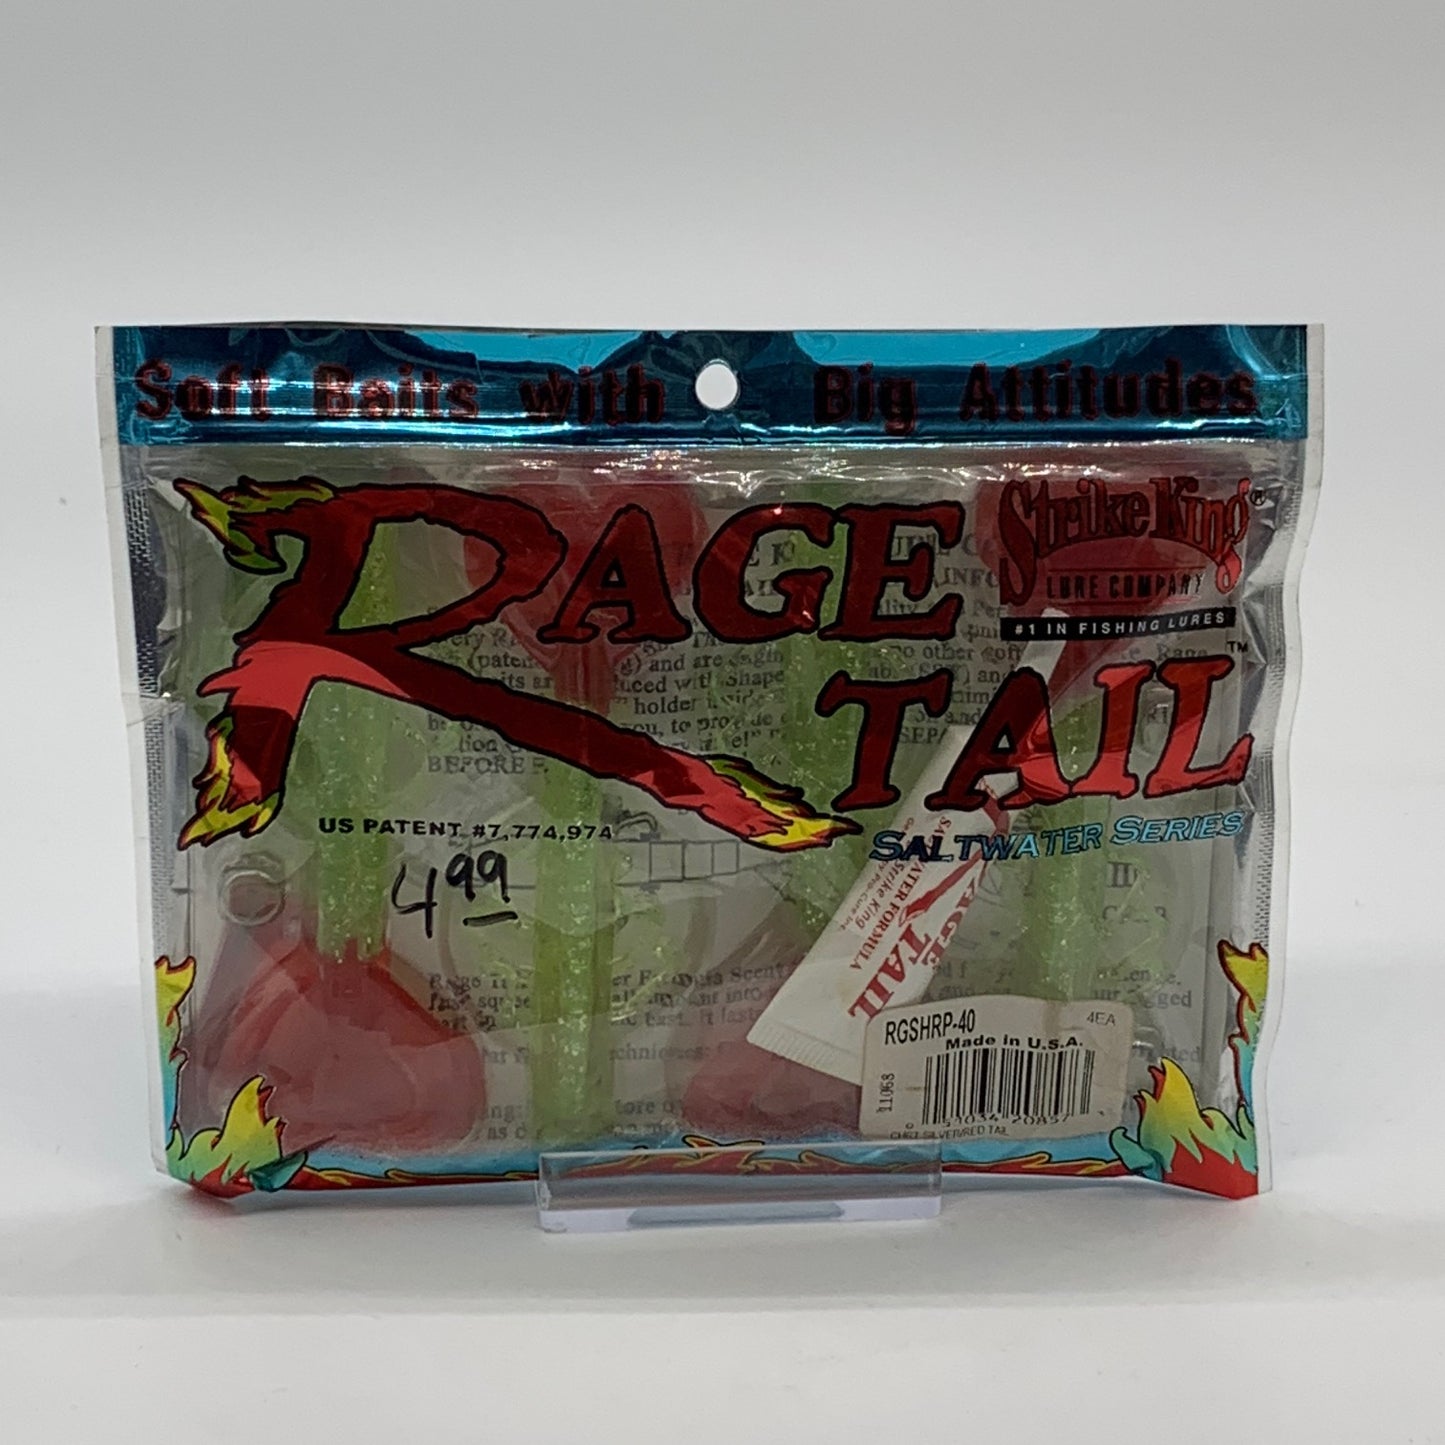 Strike King Rage Tail Salt Water Series